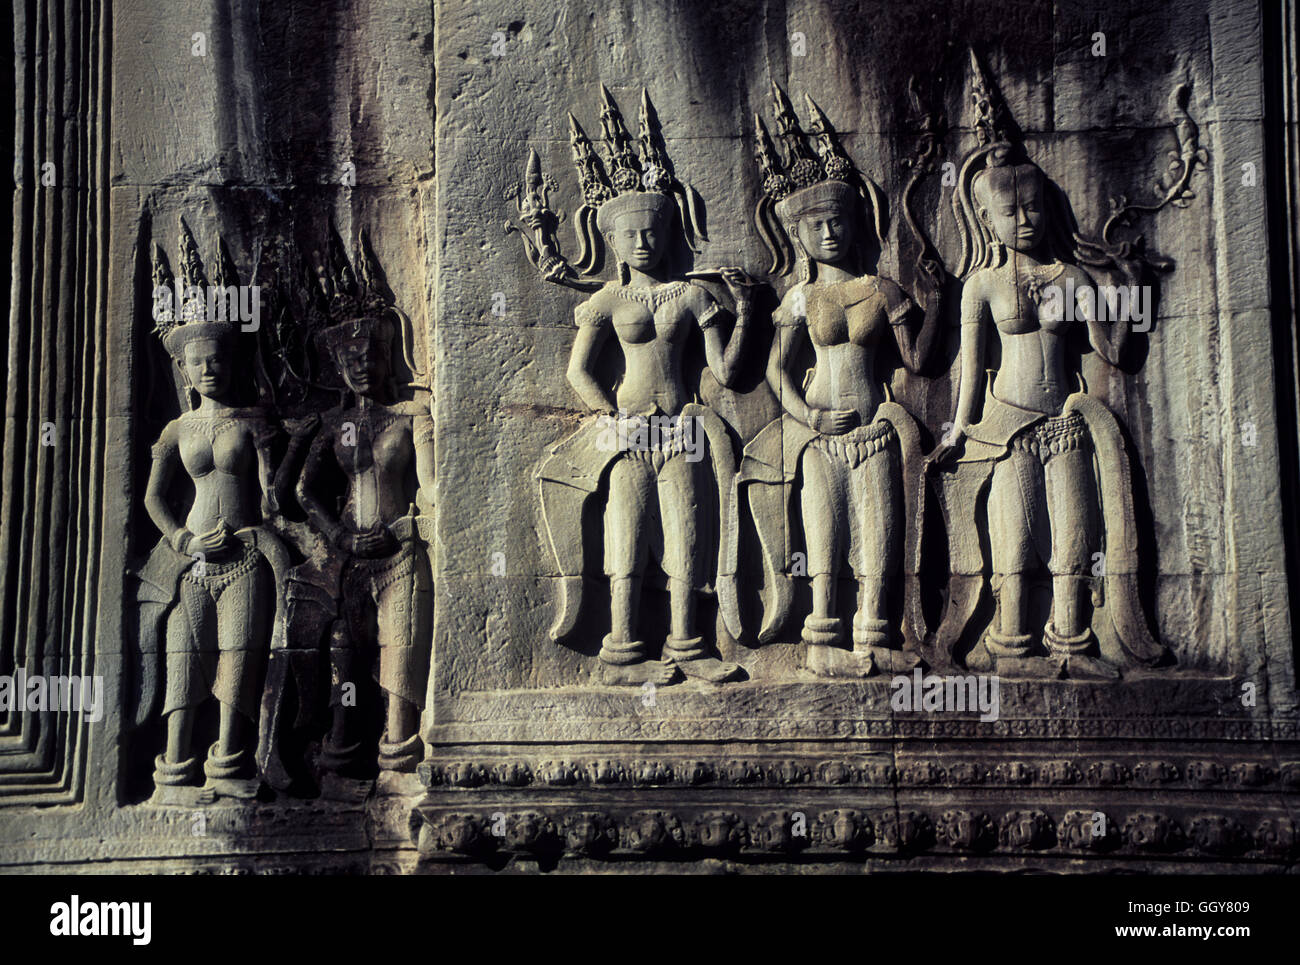 - Apsara divinidad femenina figura relieves en el interior del principal templo de Angkor Wat en Siem Reap, Camboya. Foto de stock